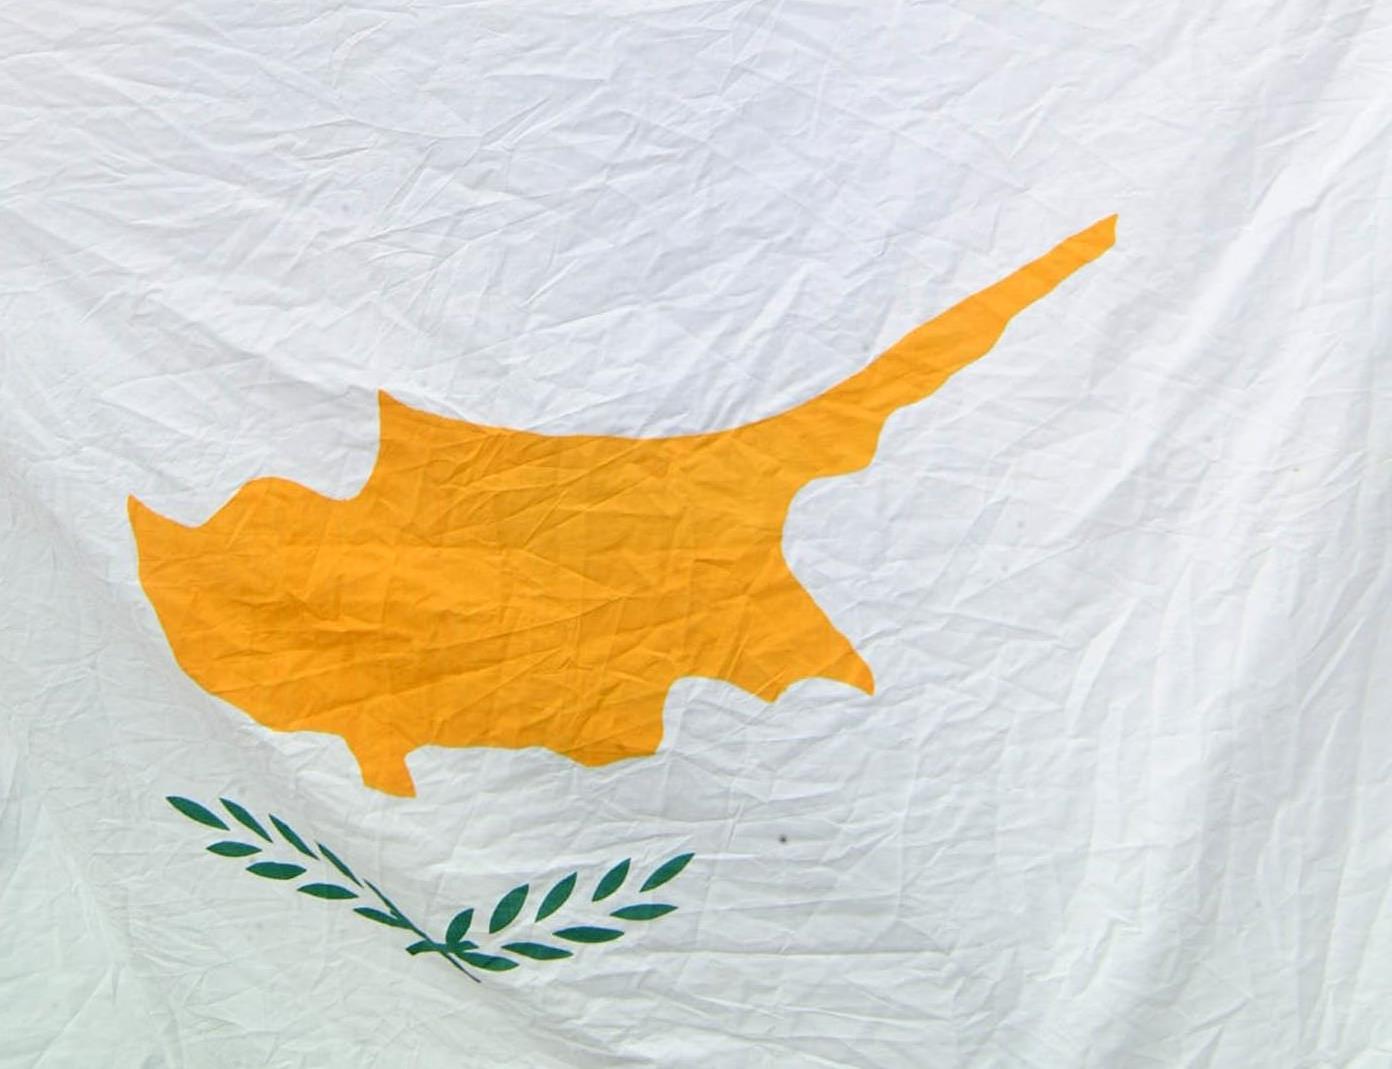 Κύπρος: Ανοίγουν οι κάλπες σήμερα για την ανάδειξη της νέας Βουλής των Αντιπροσώπων